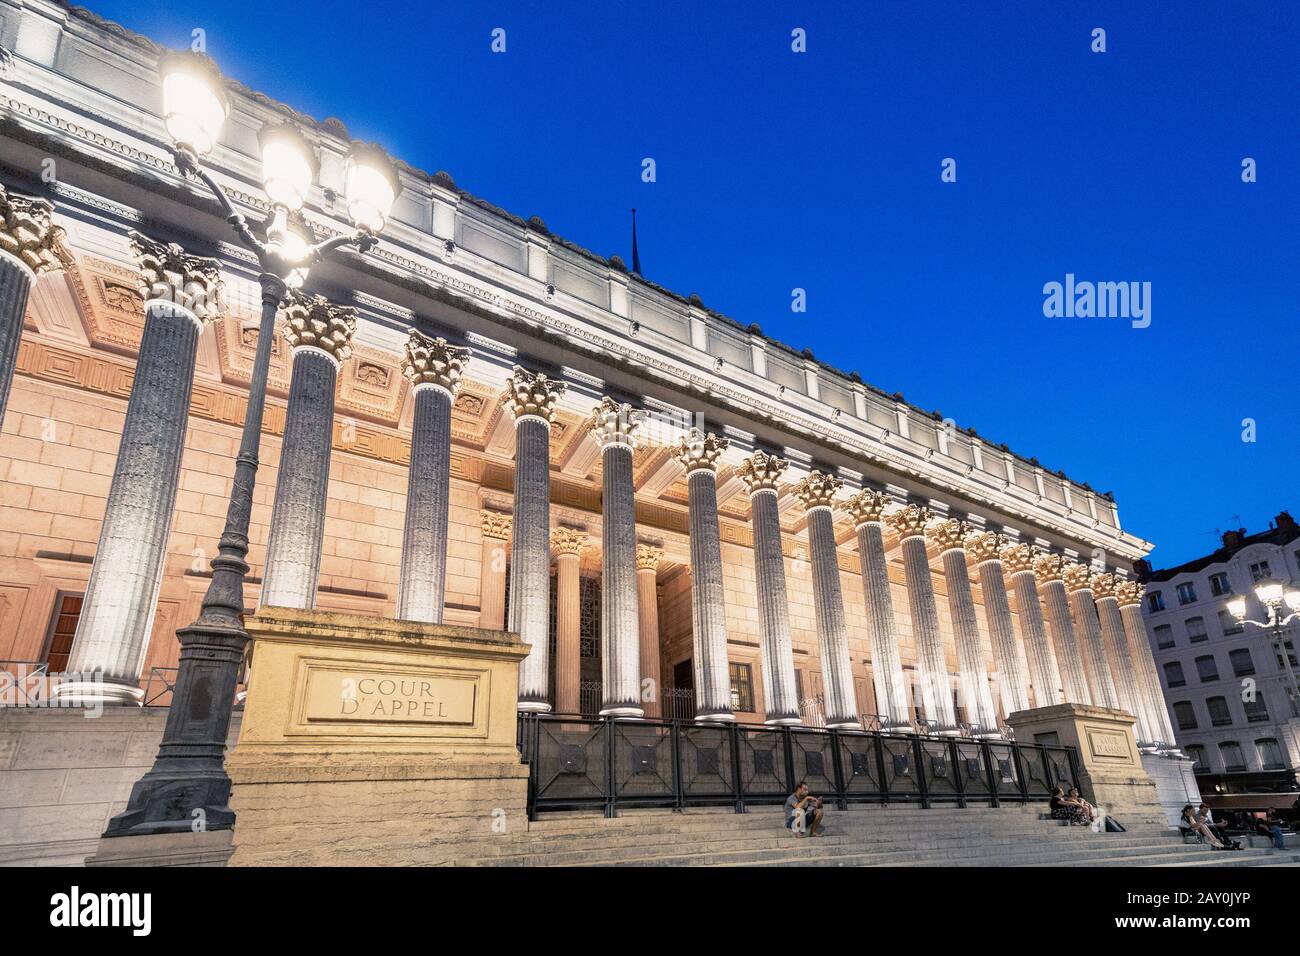 Juli 2019, Lyon, Frankreich: Leuchtendes Gebäude des Gerichtsgebäudes Cour de Appel in Lyon, Frankreich. Foto in blauer Stunde im Zwielicht aufgenommen Stockfoto